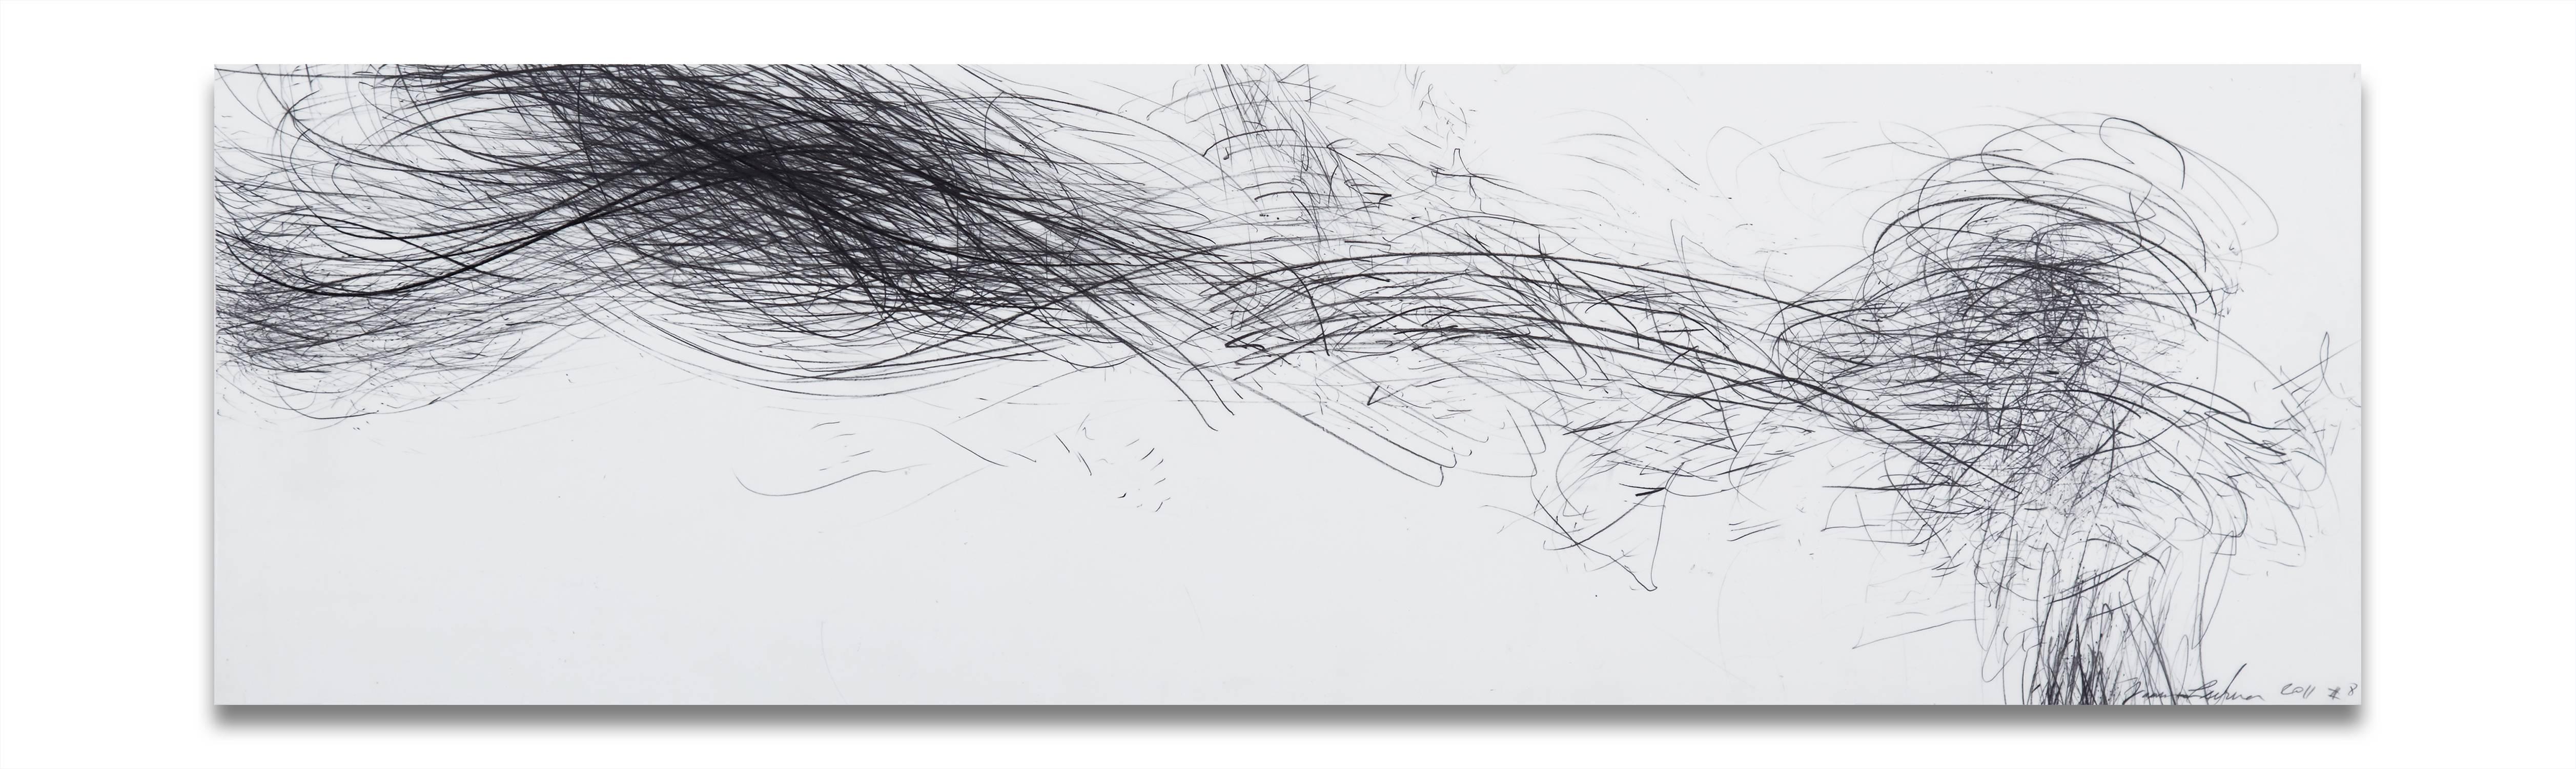 Jaanika Peerna Abstract Painting - Storm Series Horizontal 8 (Abstract drawing)